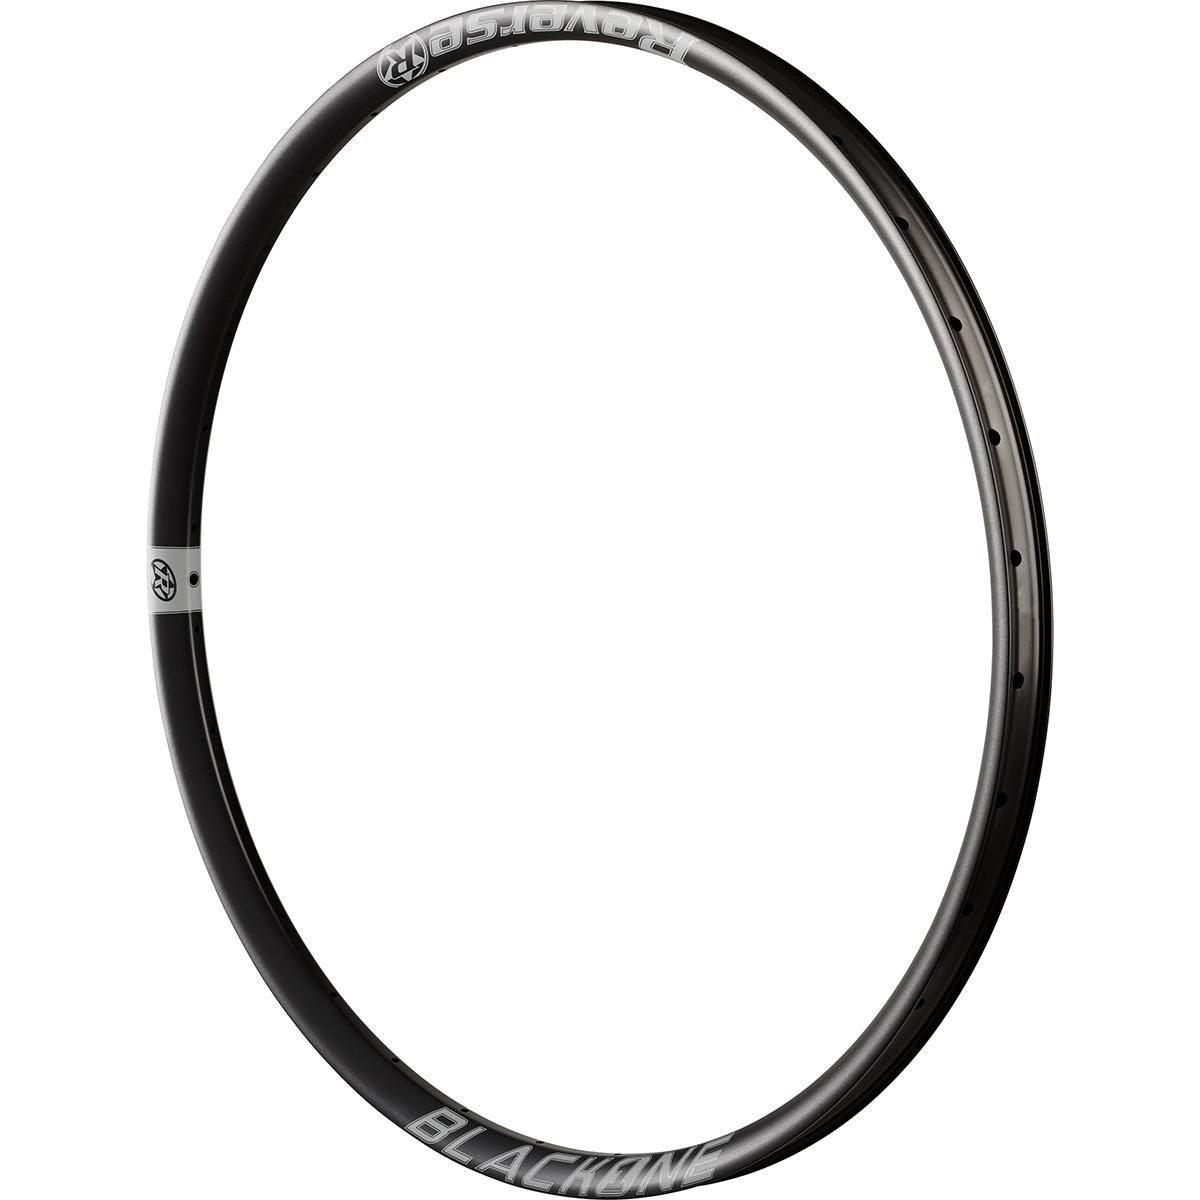 Reverse Components Cerchio MTB Black One Nero/Grigio, 29 Pollici x 30 mm, Alluminio